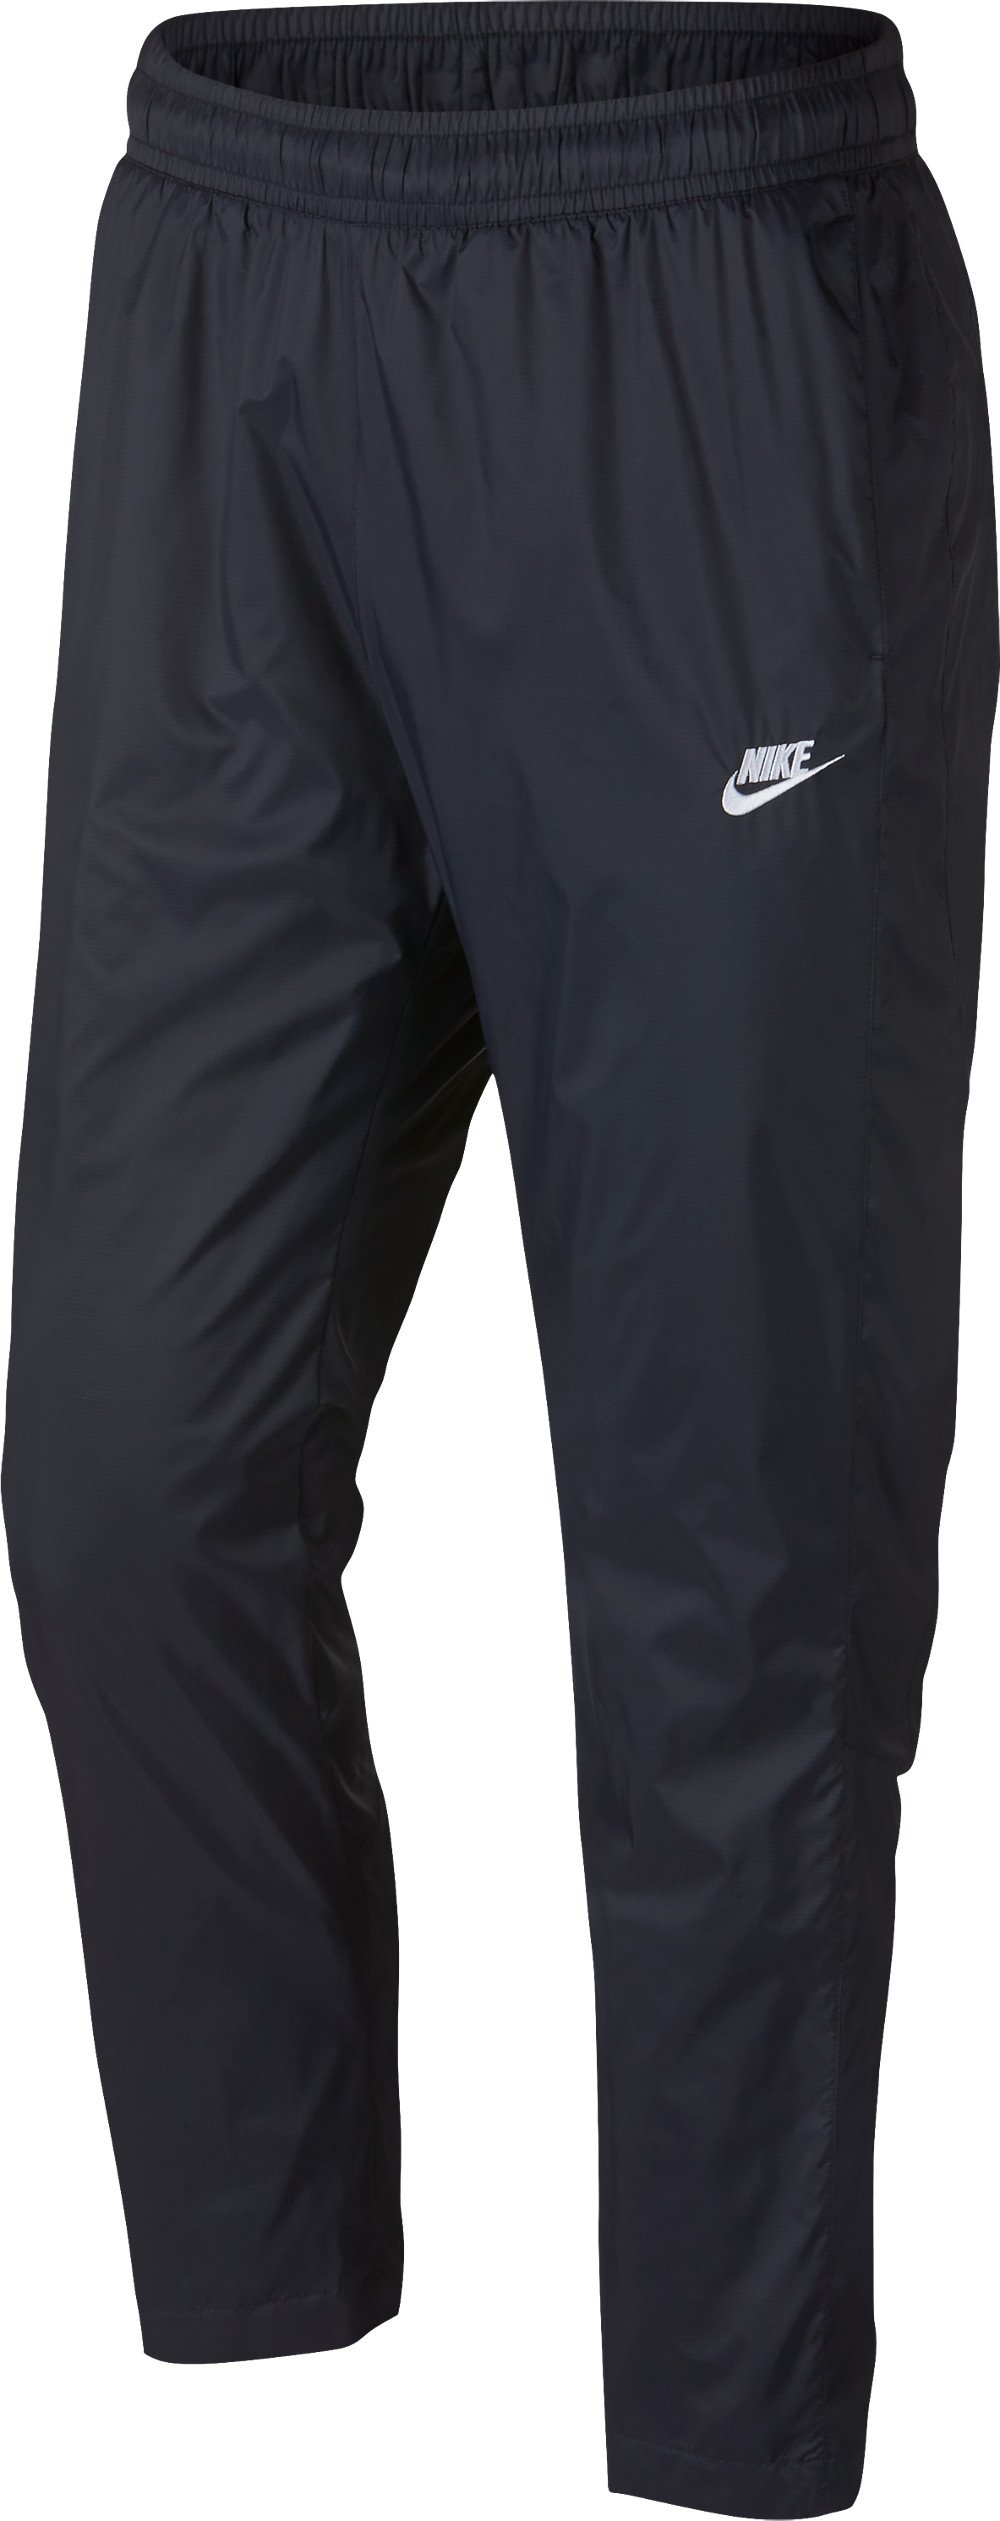 Pánské kalhoty Nike Sportswear OH Woven Core